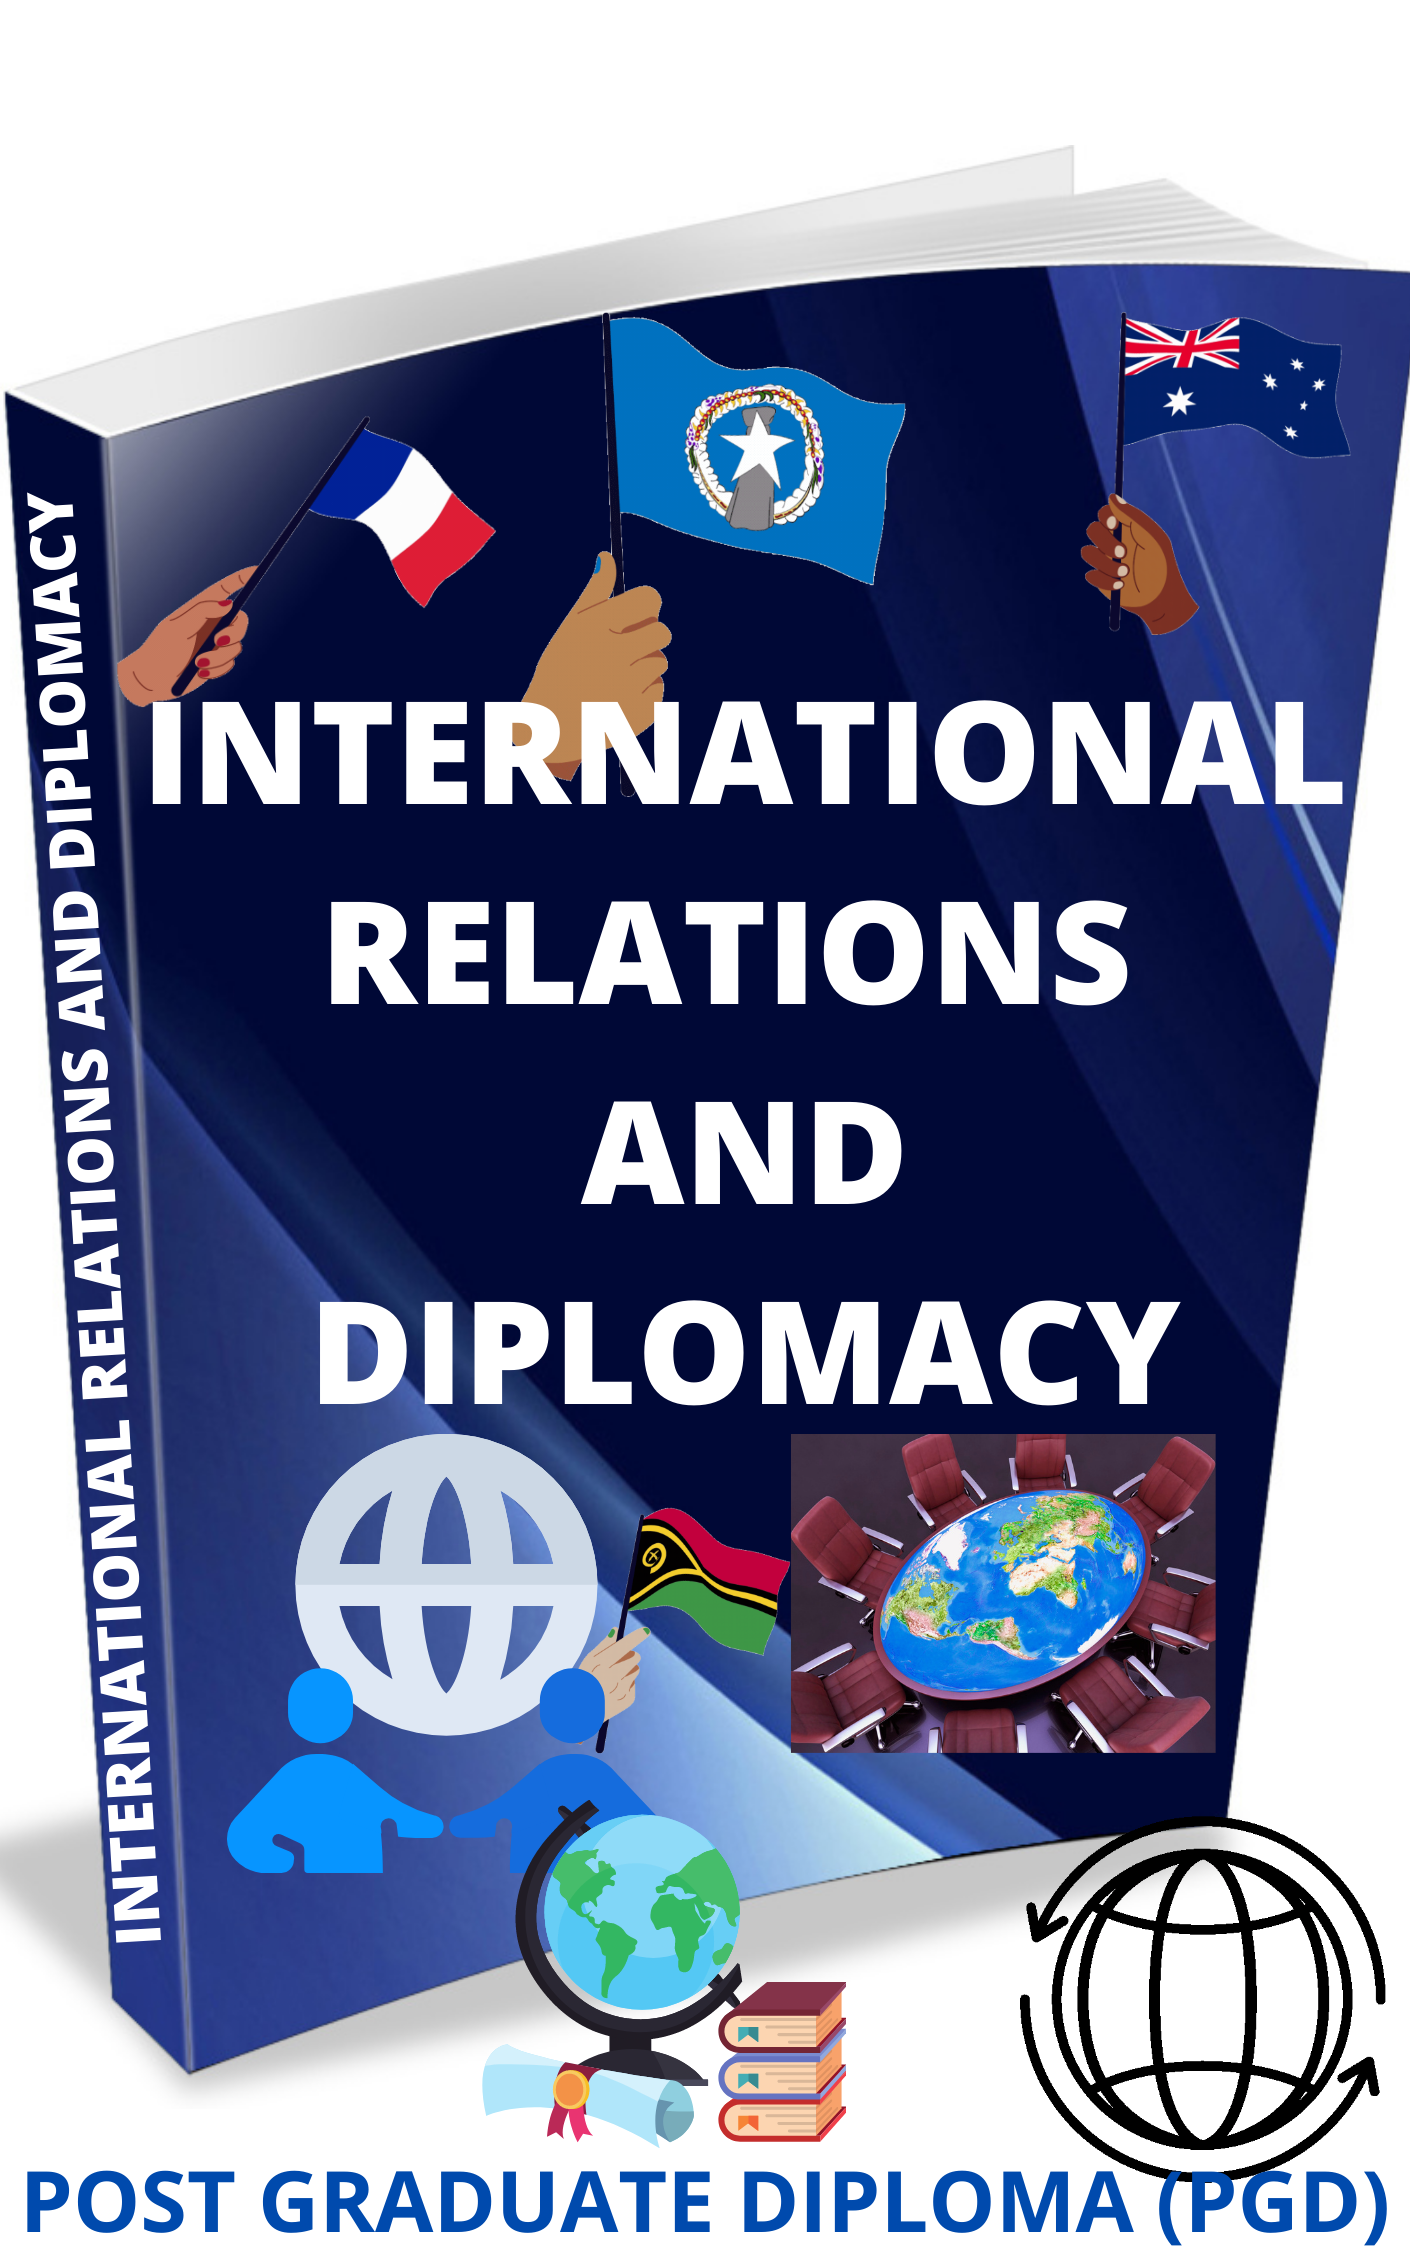 POST GRADUATE DIPLOMA – INTERNATIONAL RELATIONS & DIPLOMACY